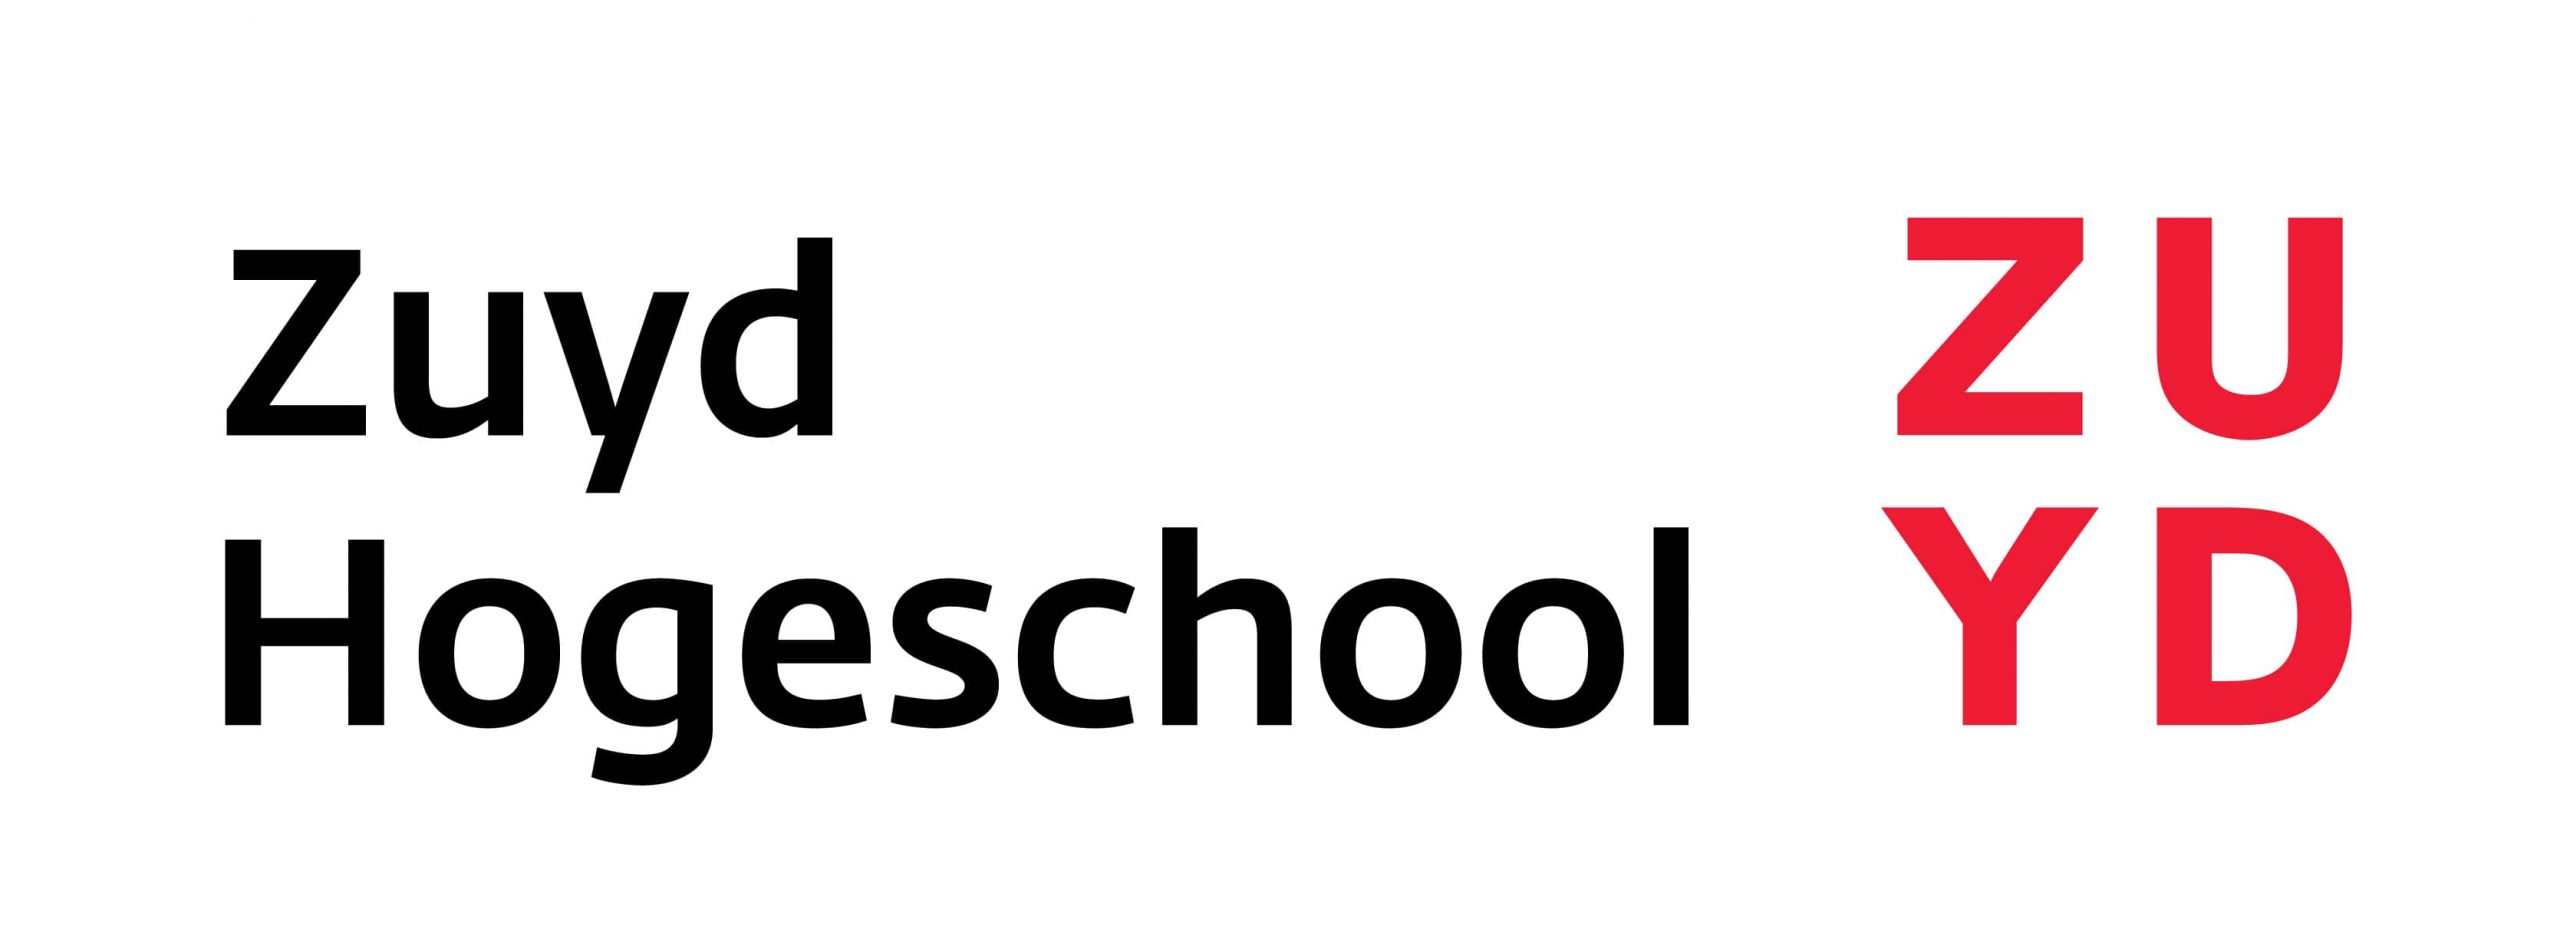 logo zuyd hogeschool